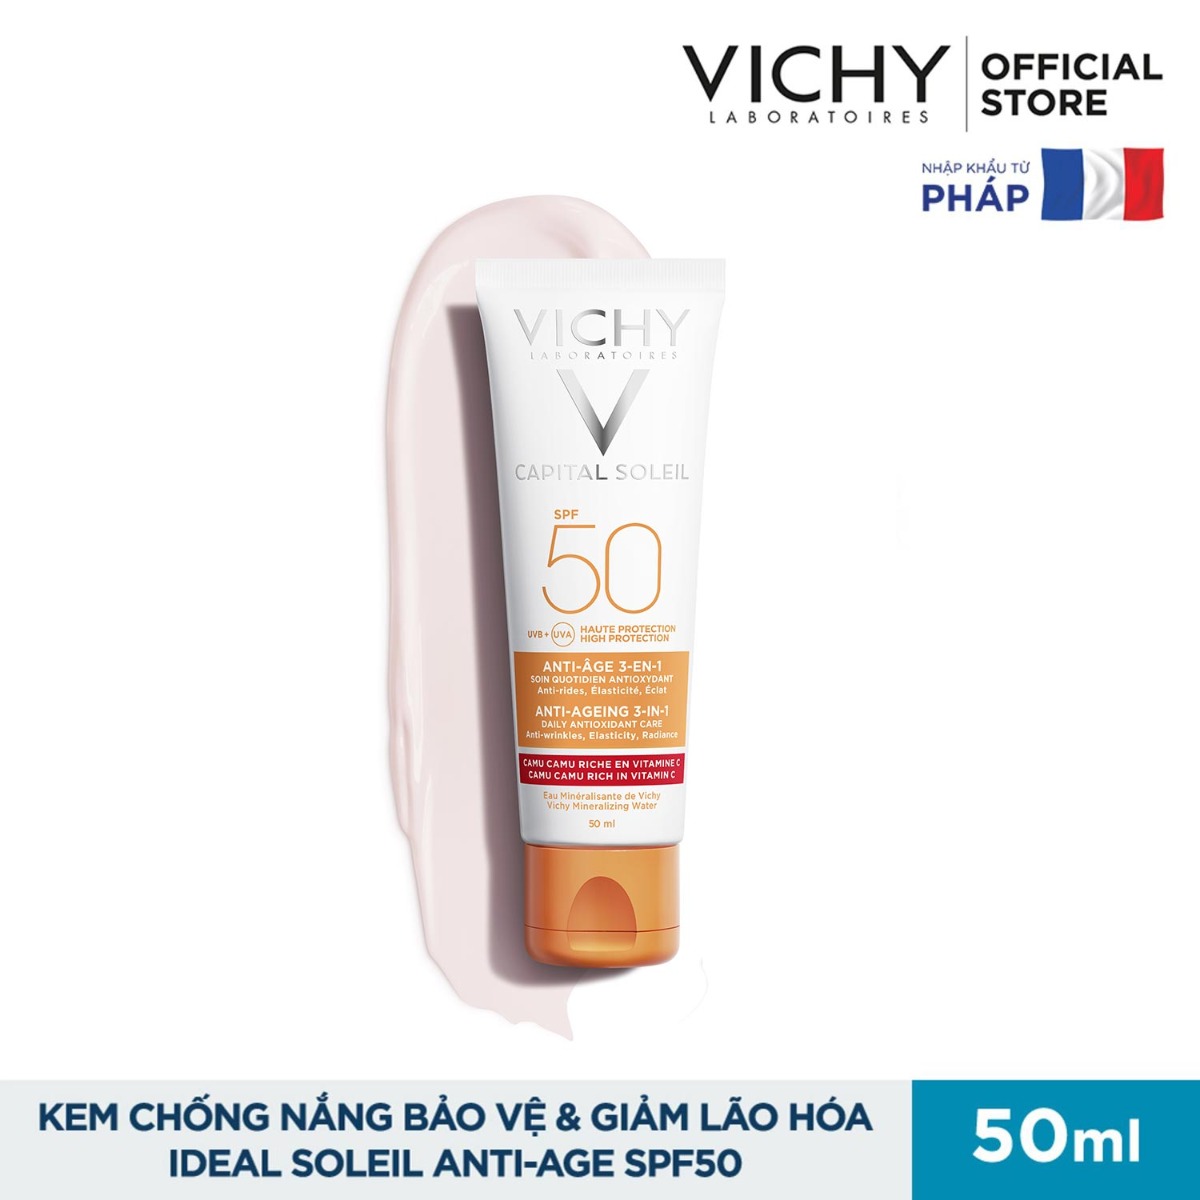 Kem Chống Nắng Vichy Ideal Soleil Anti-Age SPF50 50ml giúp bảo vệ và chống lão hóa cho da.